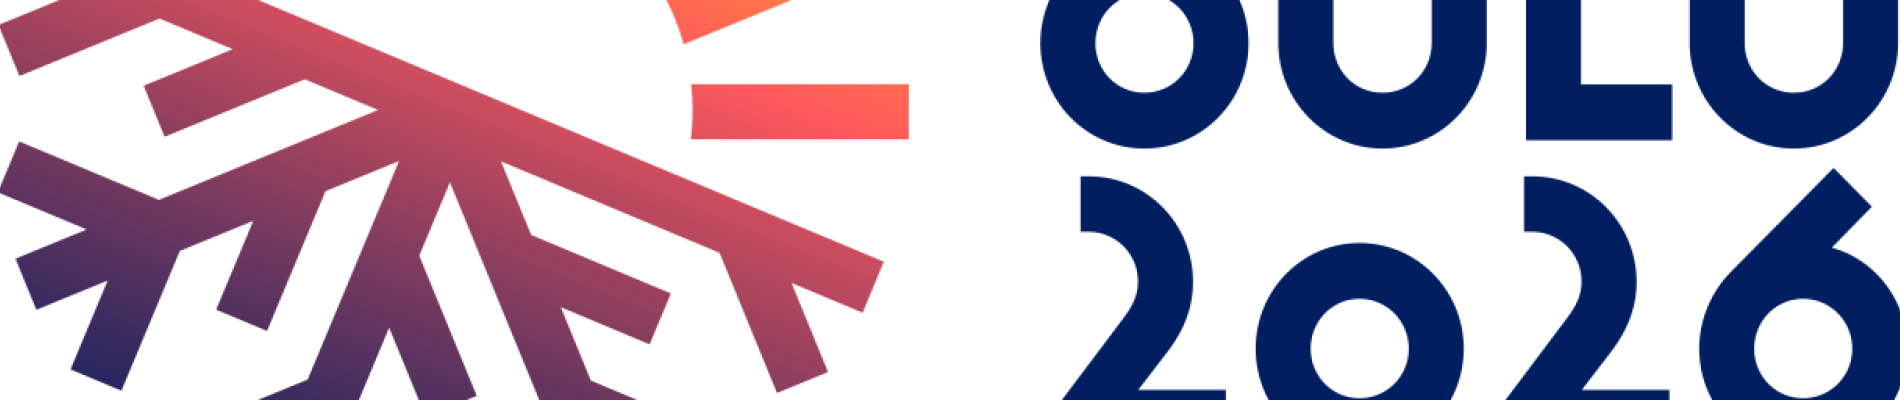 OULU2026-logo